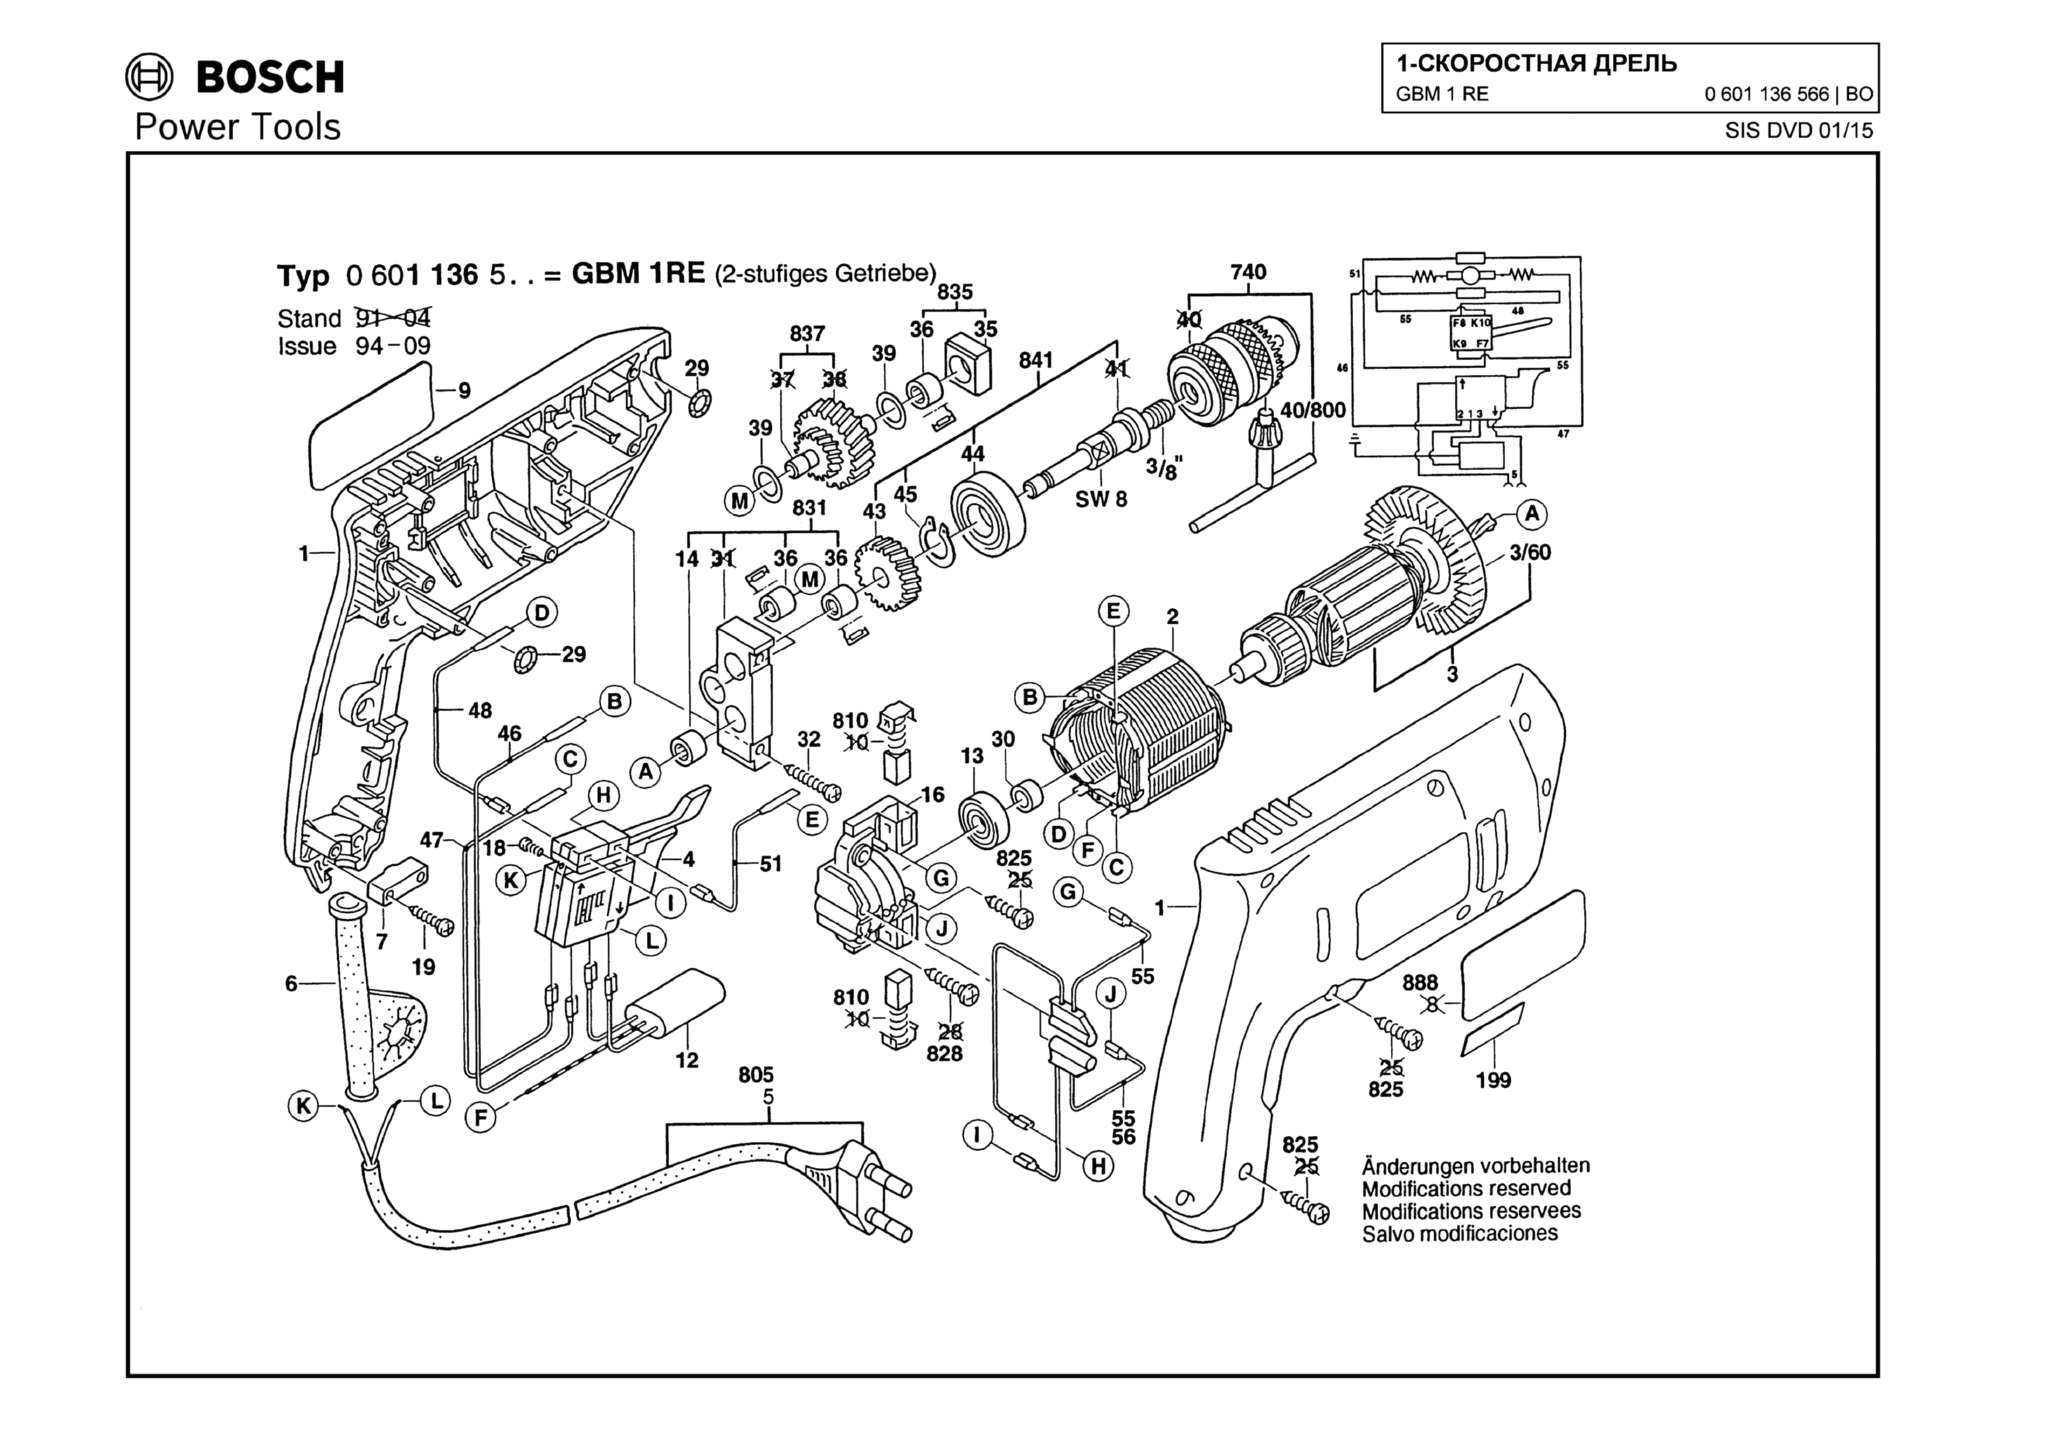 Запчасти, схема и деталировка Bosch GBM 1 RE (ТИП 0601136566)